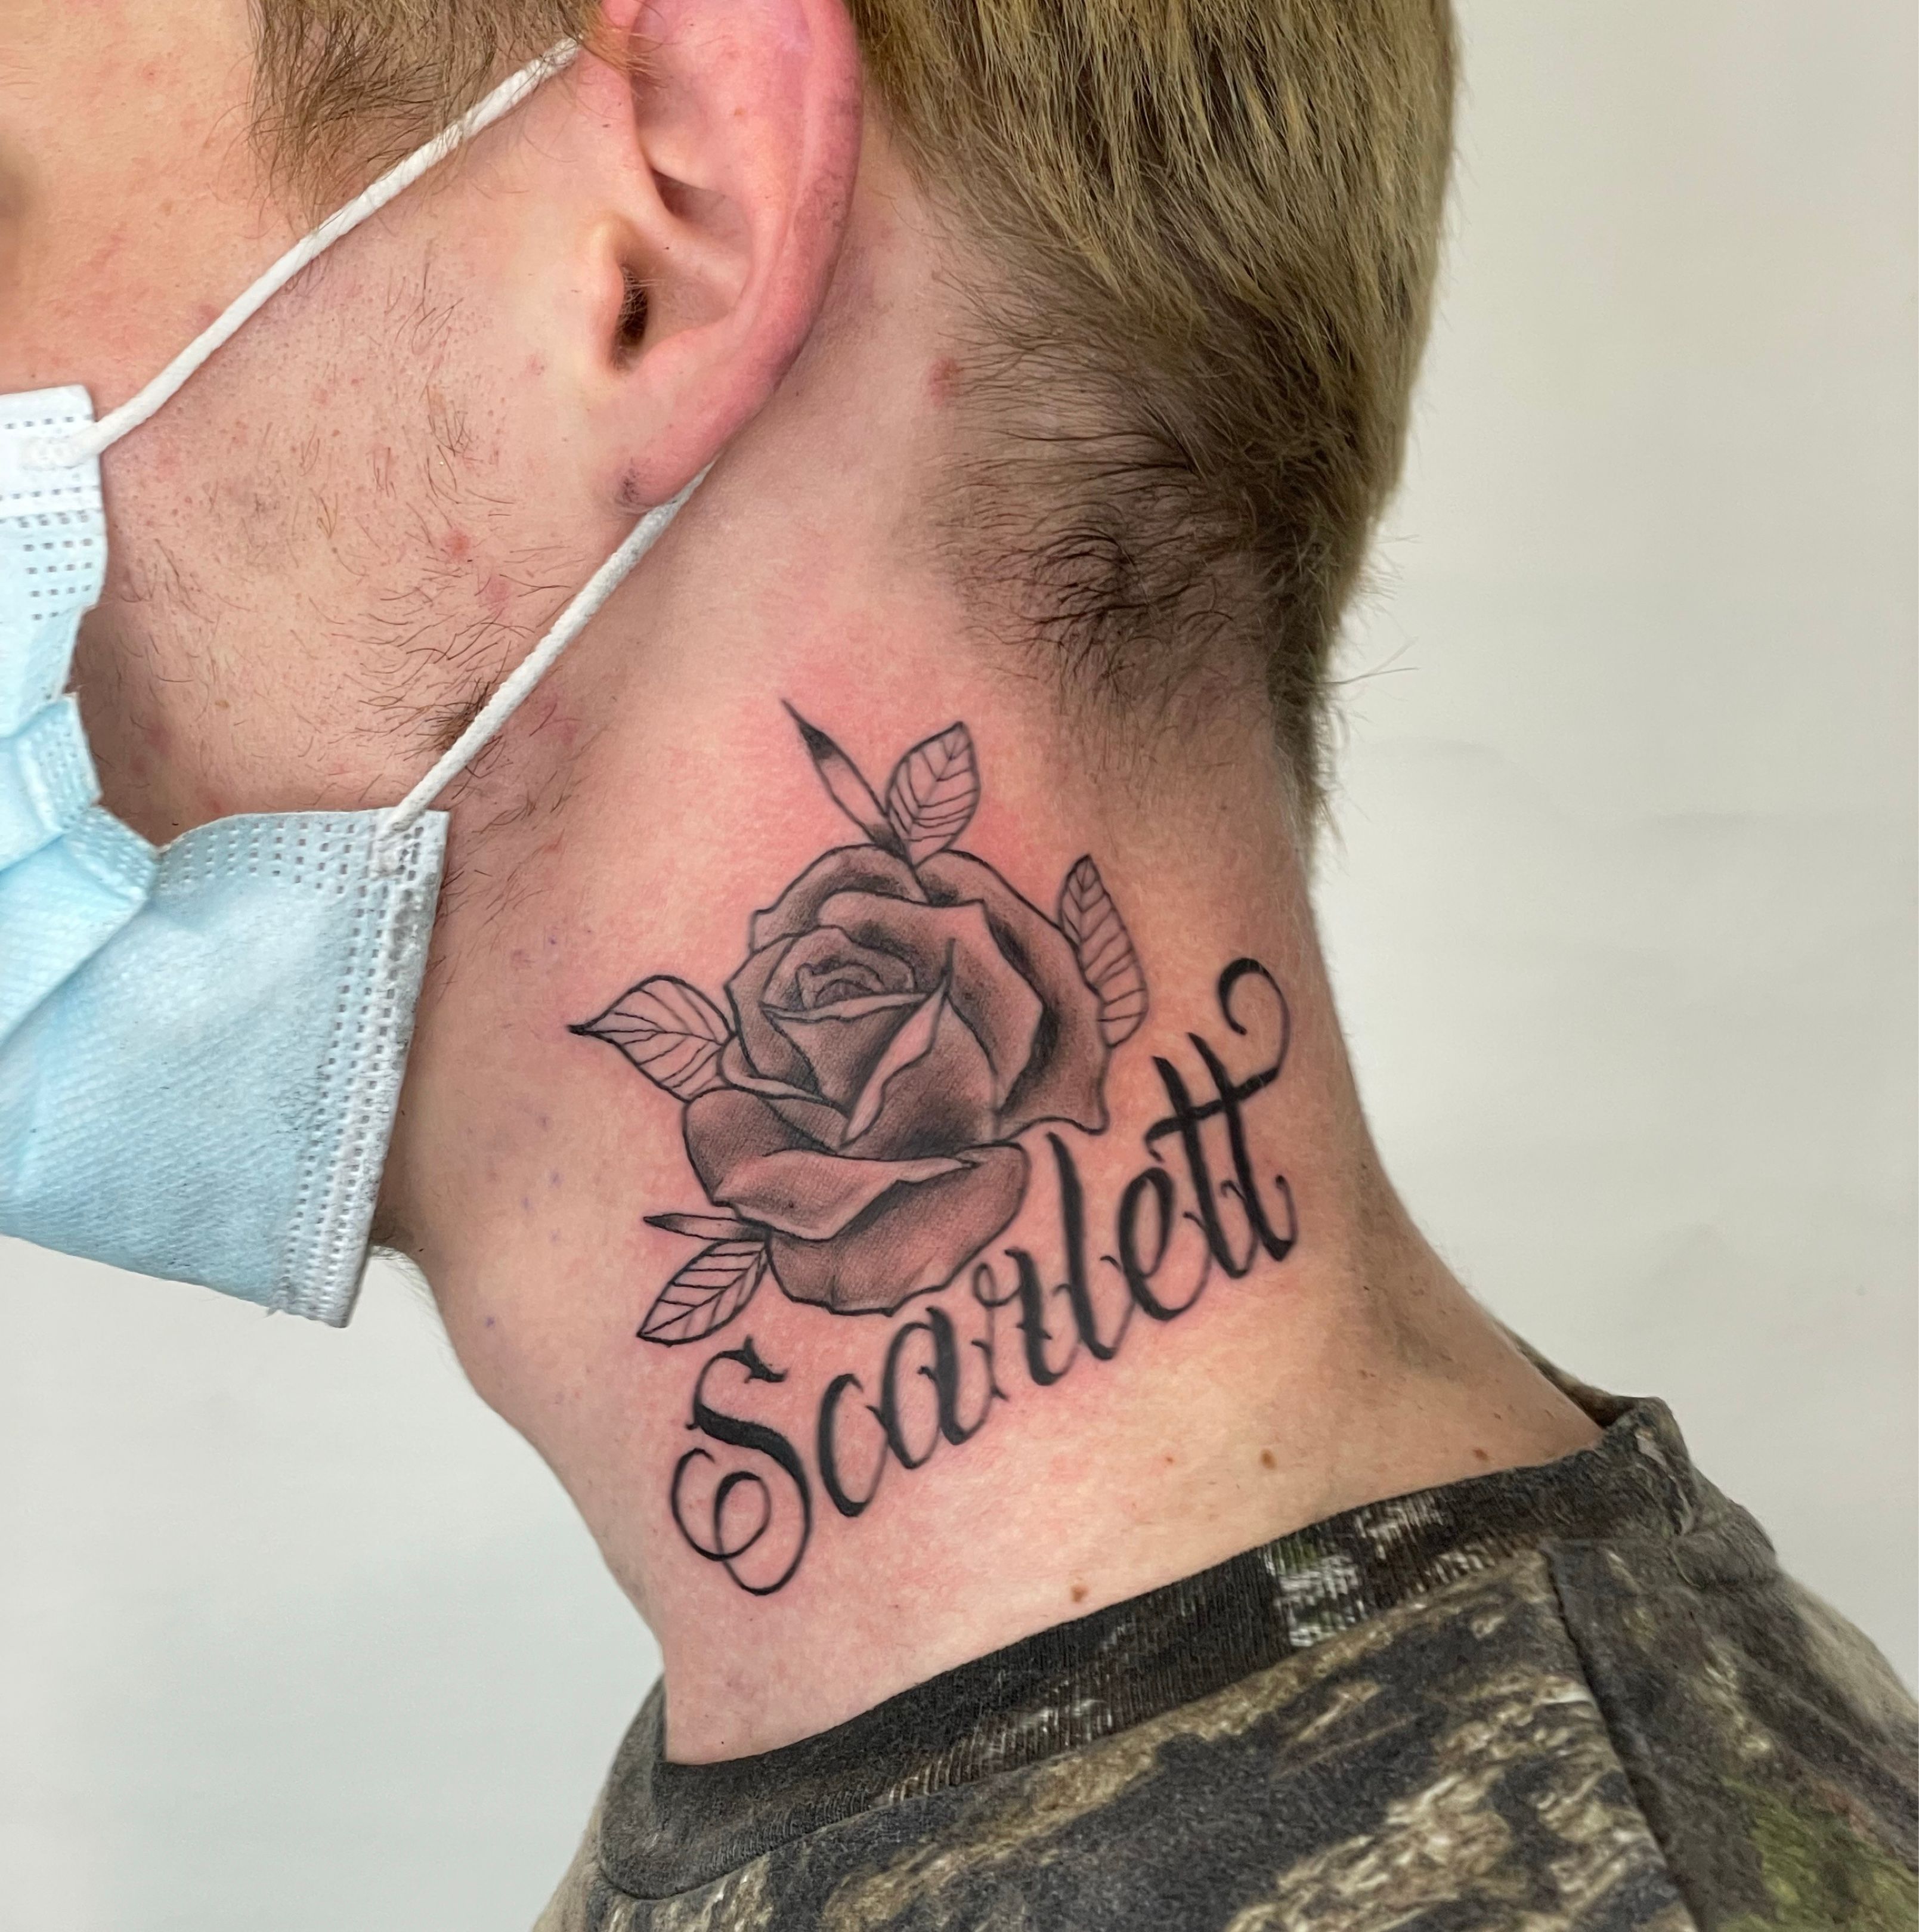 Scarlett Johansson Tattoo Design Idea  OhMyTat